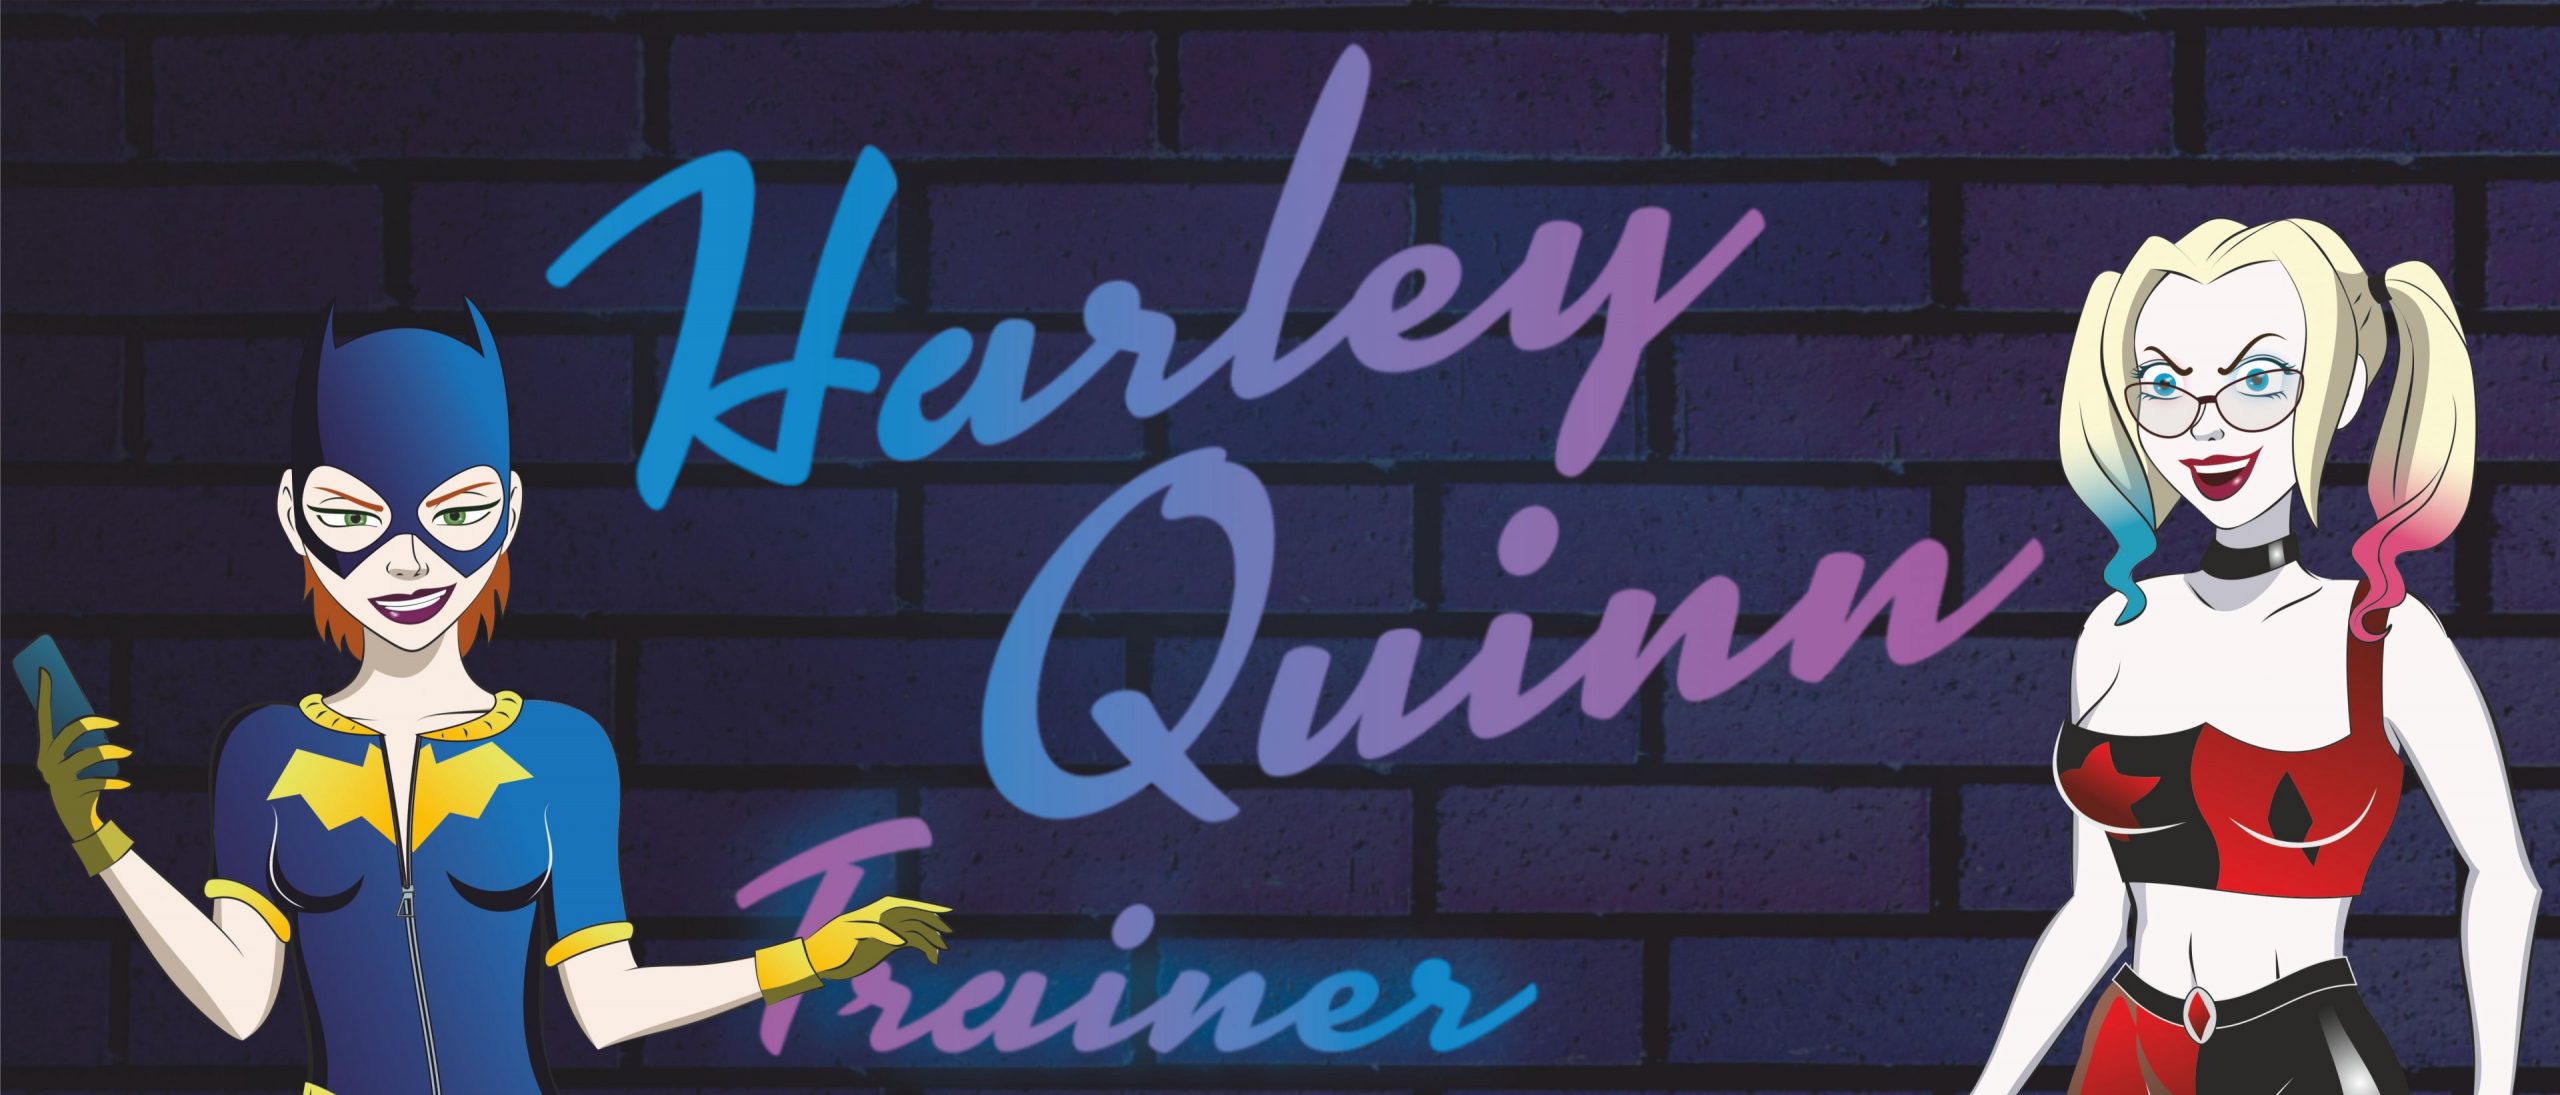 Harley quinn hentai game